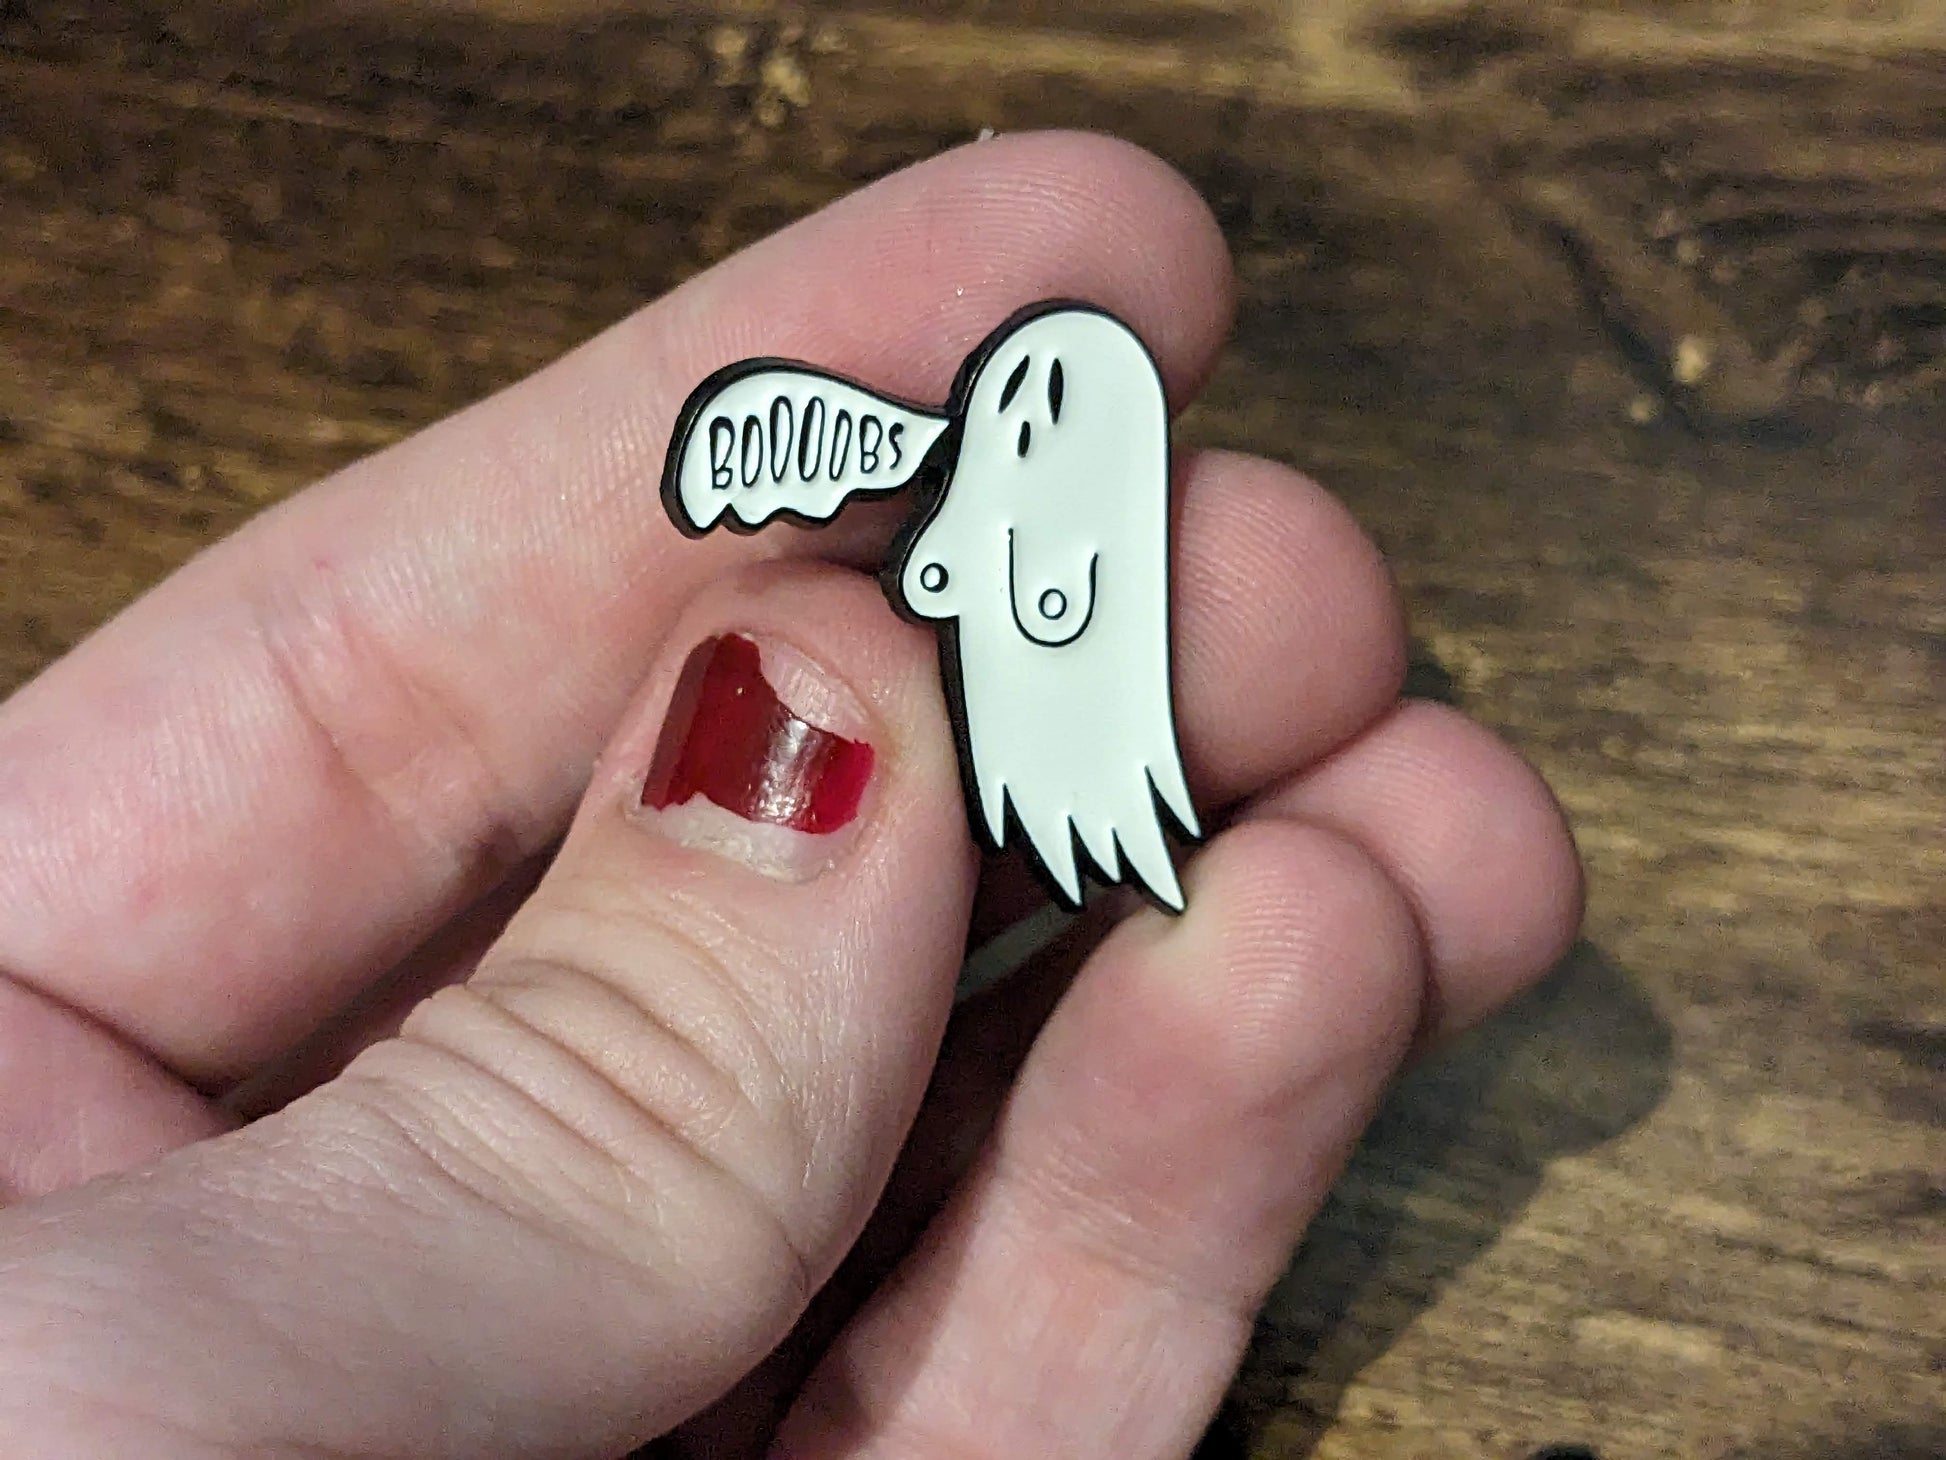 Boobs: Funny Ghost Goth Fashion Halloween Enamel Pin